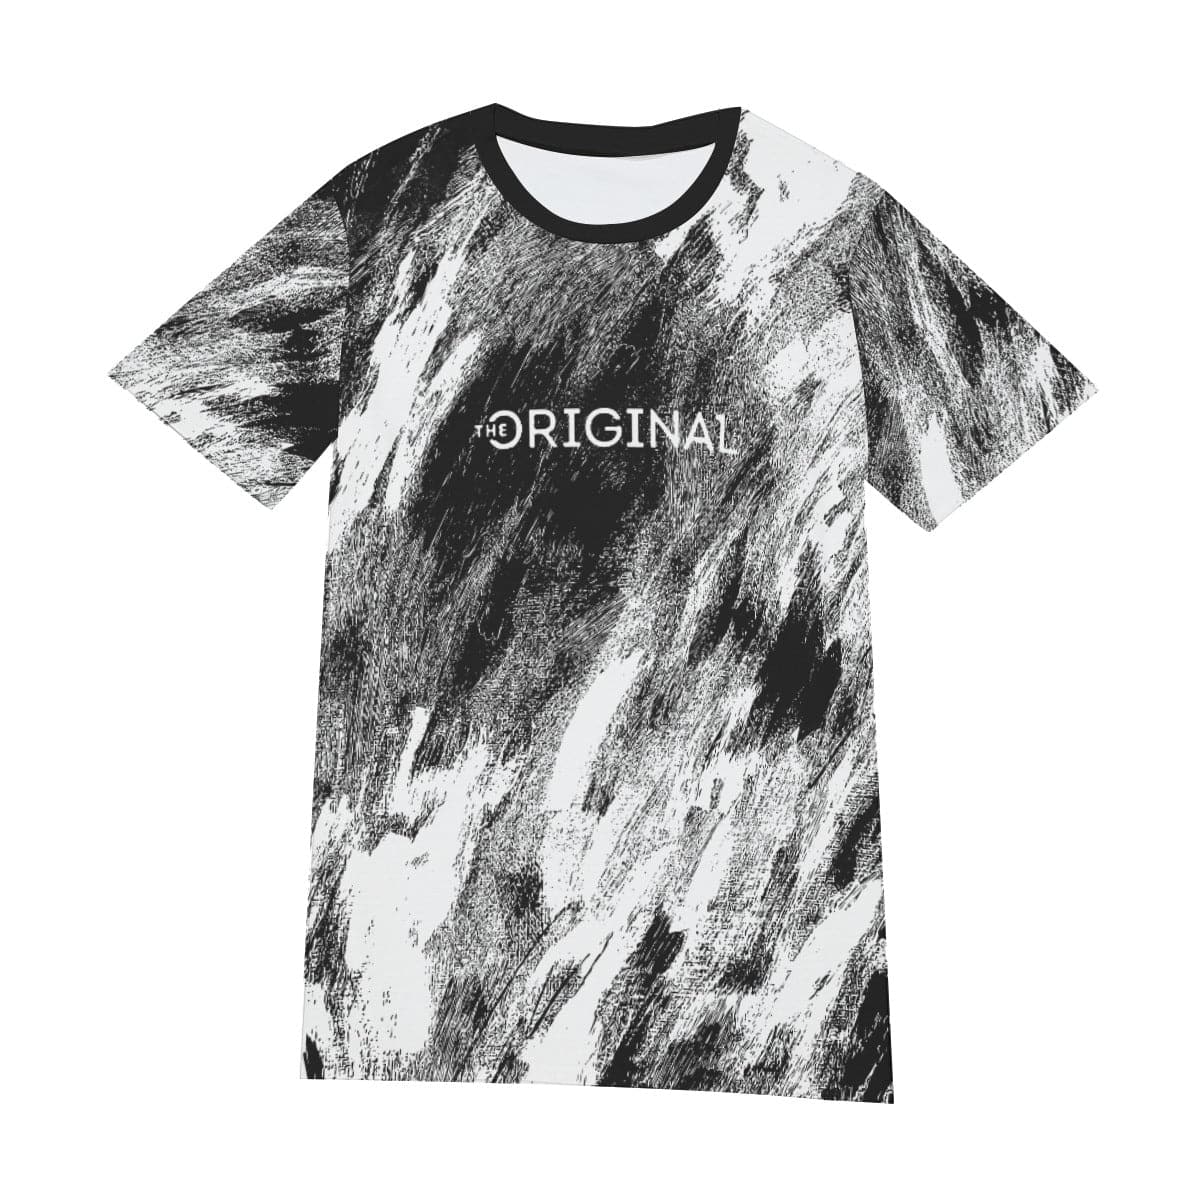 The Original One Dream T-shirt | The Original One